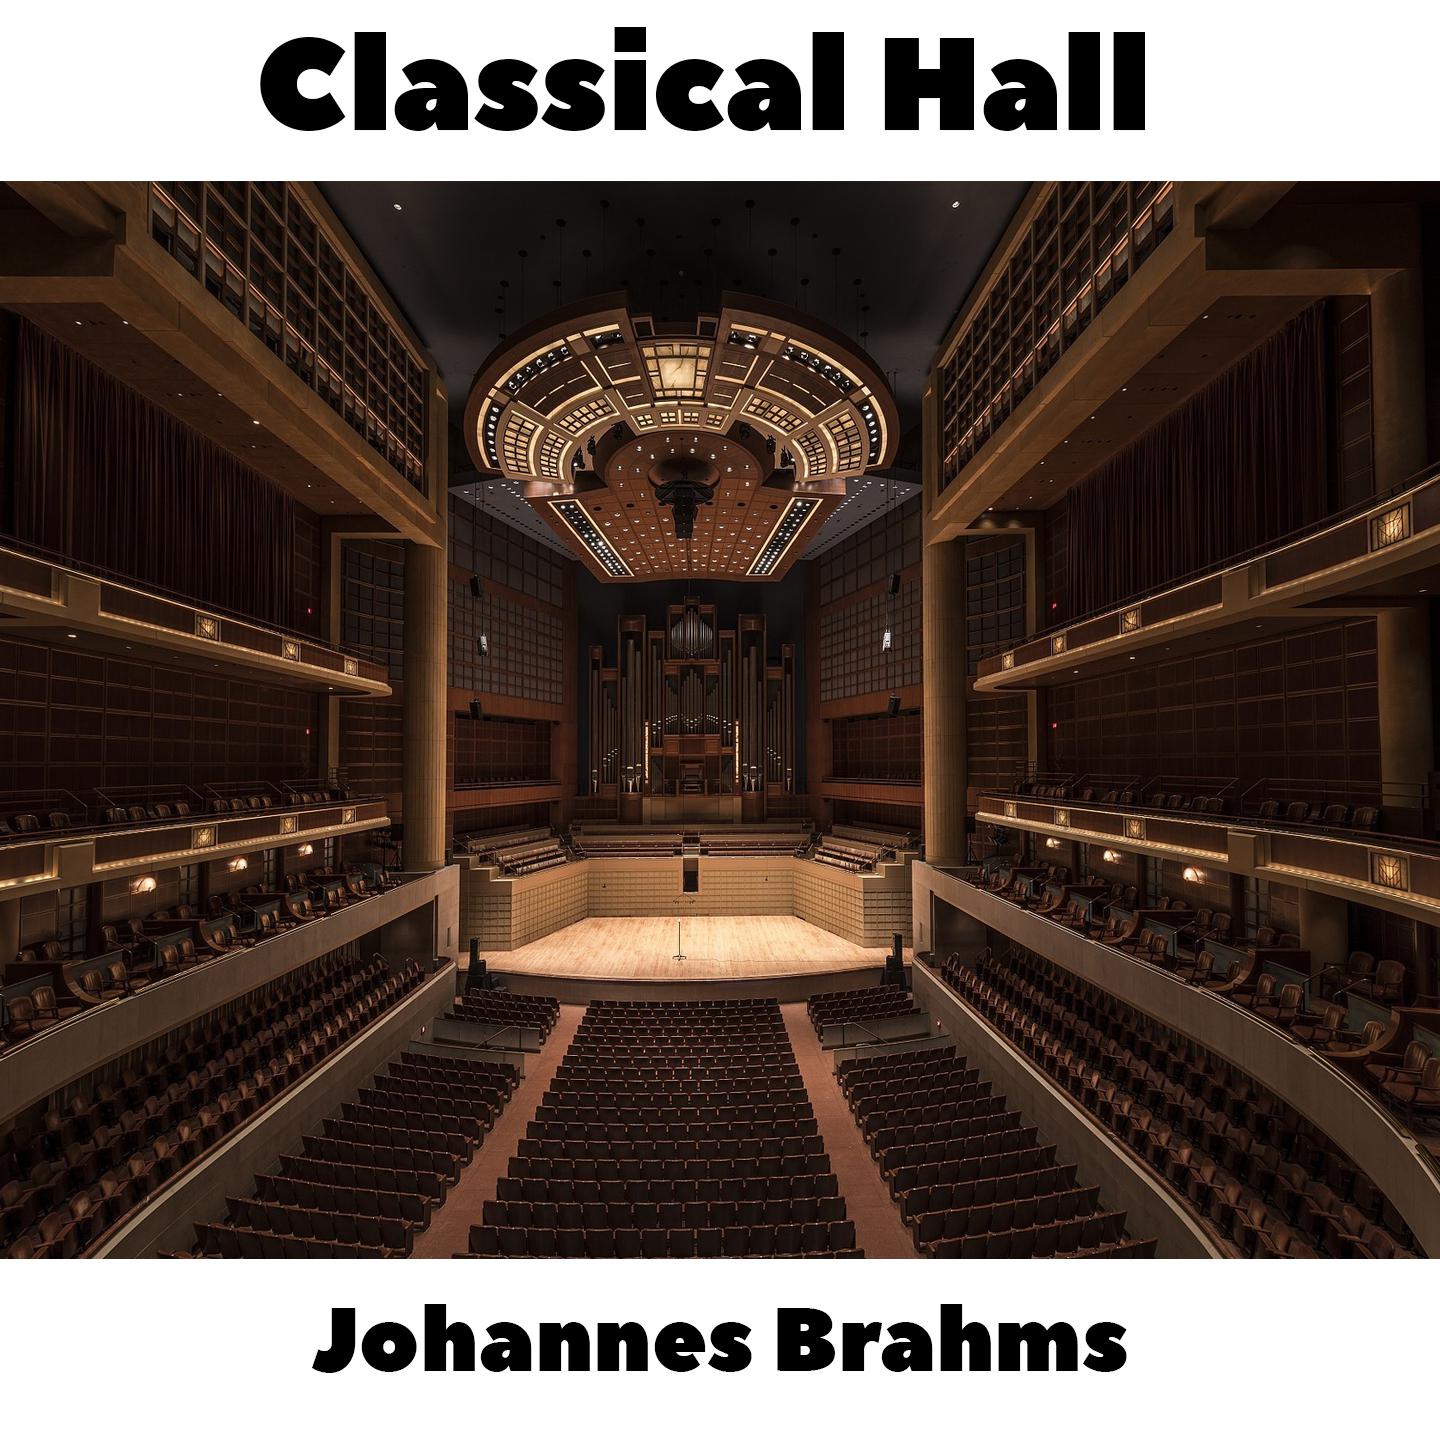 Johannes Brahms -  16 Waltzes, Op.39 - No.6 in C#